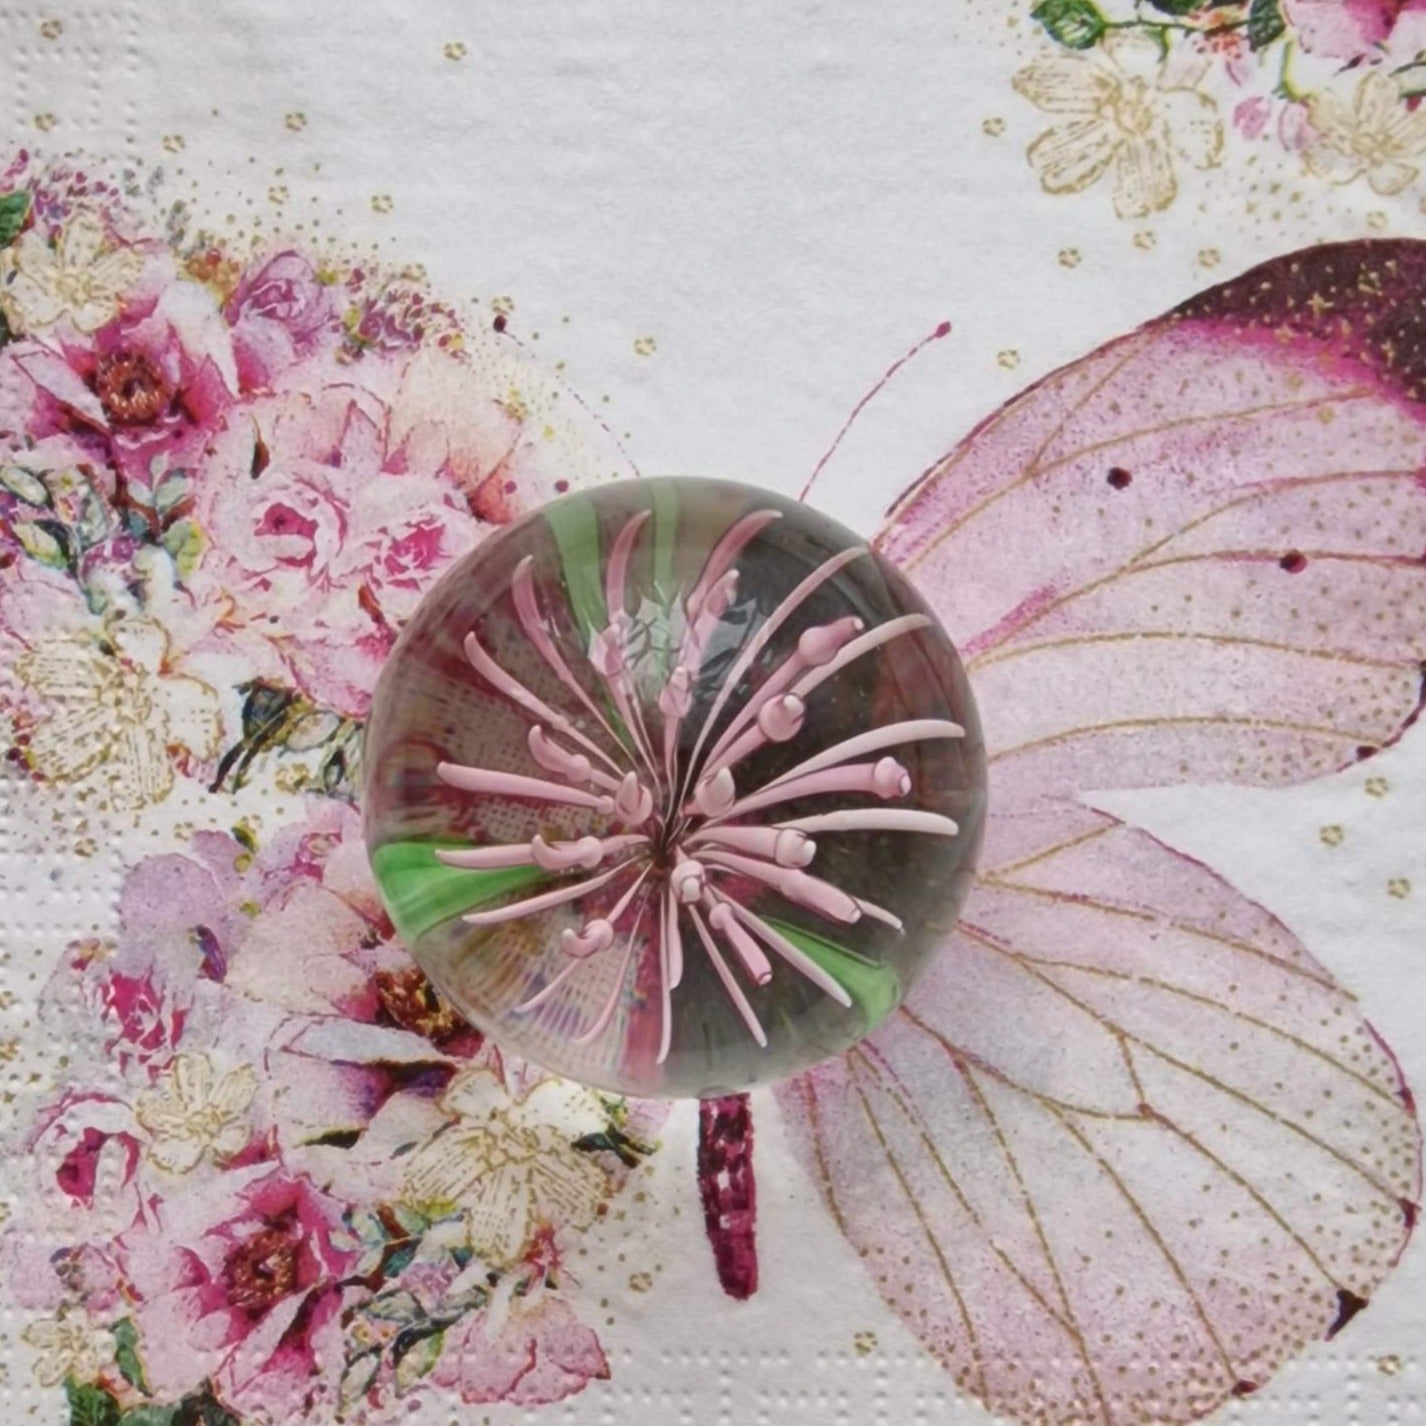 Blown Glass "Pink Flower" Paperweight